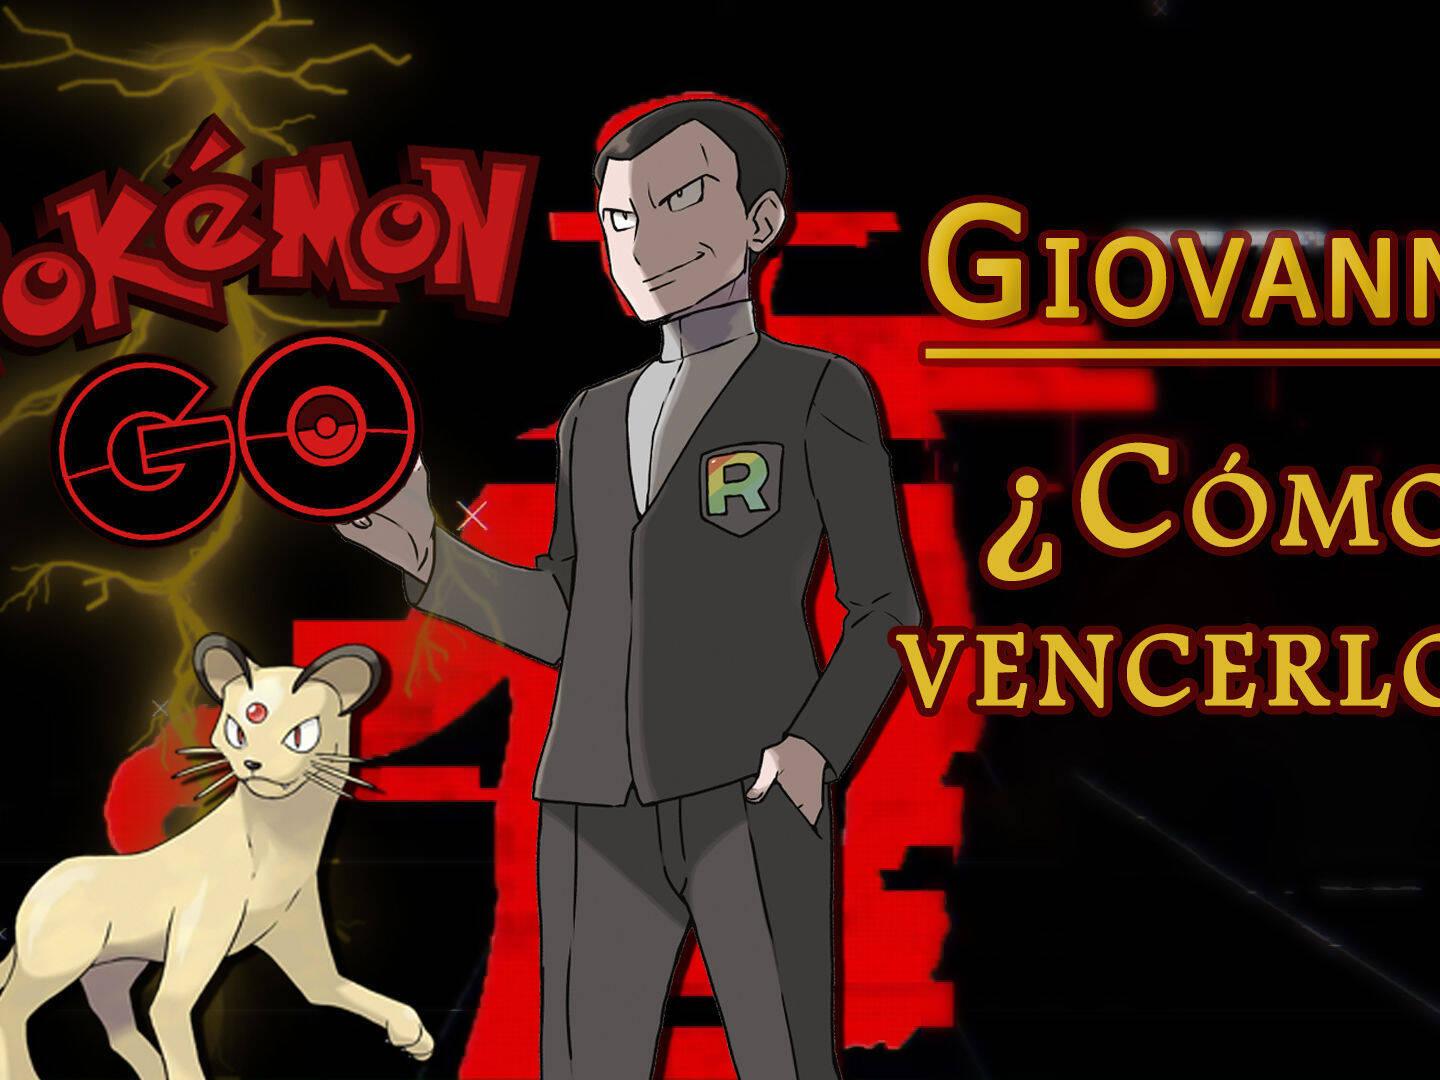 Próximos eventos de Pokémon GO en noviembre 2022: Giovanni, Mewtwo